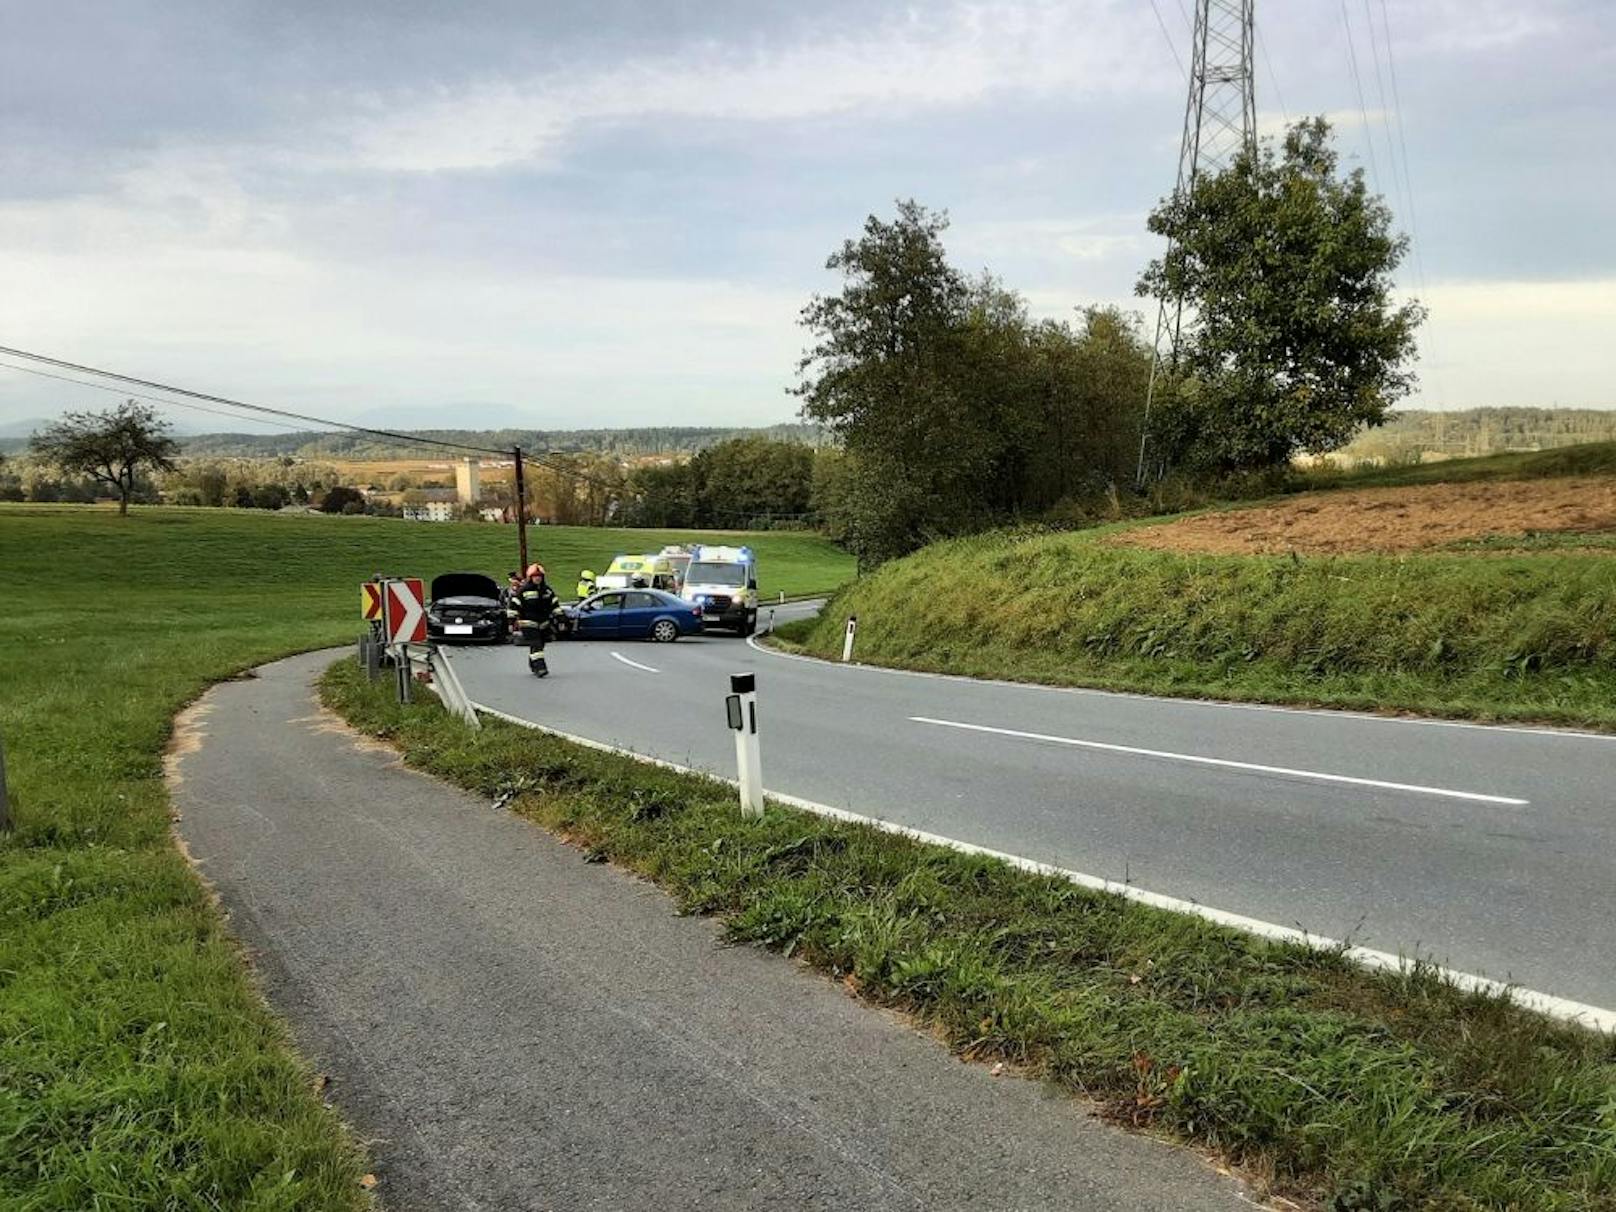 Kräutermühle in Unfallauto bringt Polizei auf neue Spur